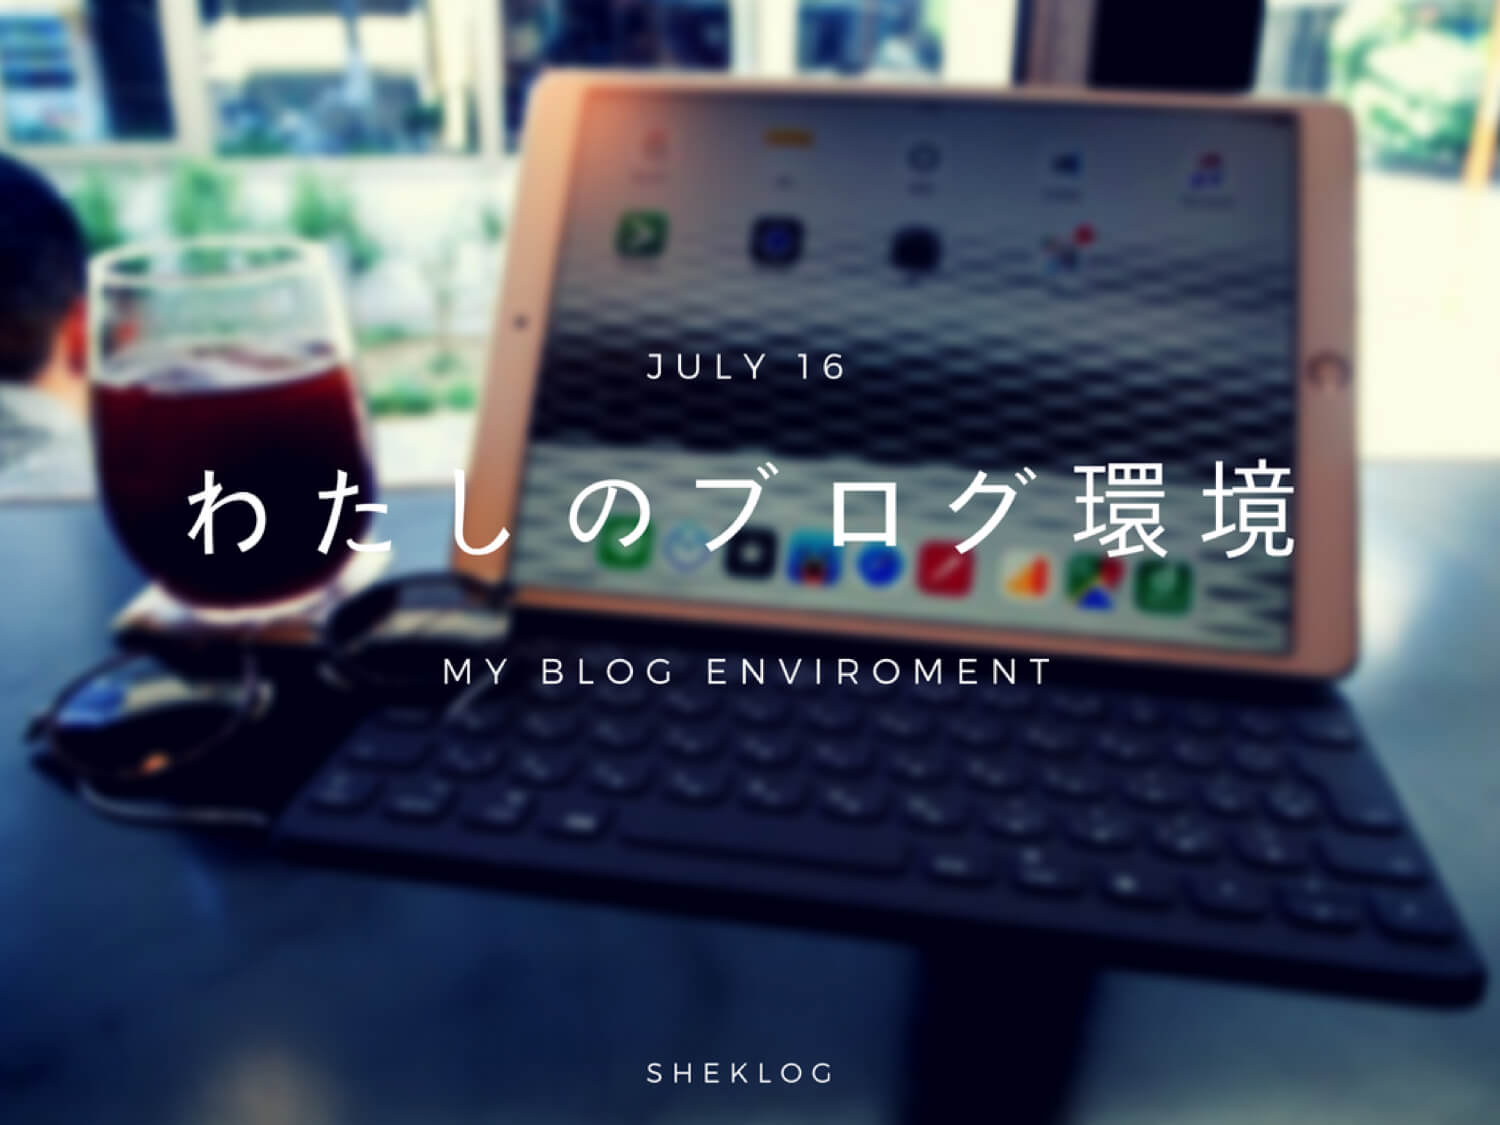 「#わたしのブログ環境」やってみた。